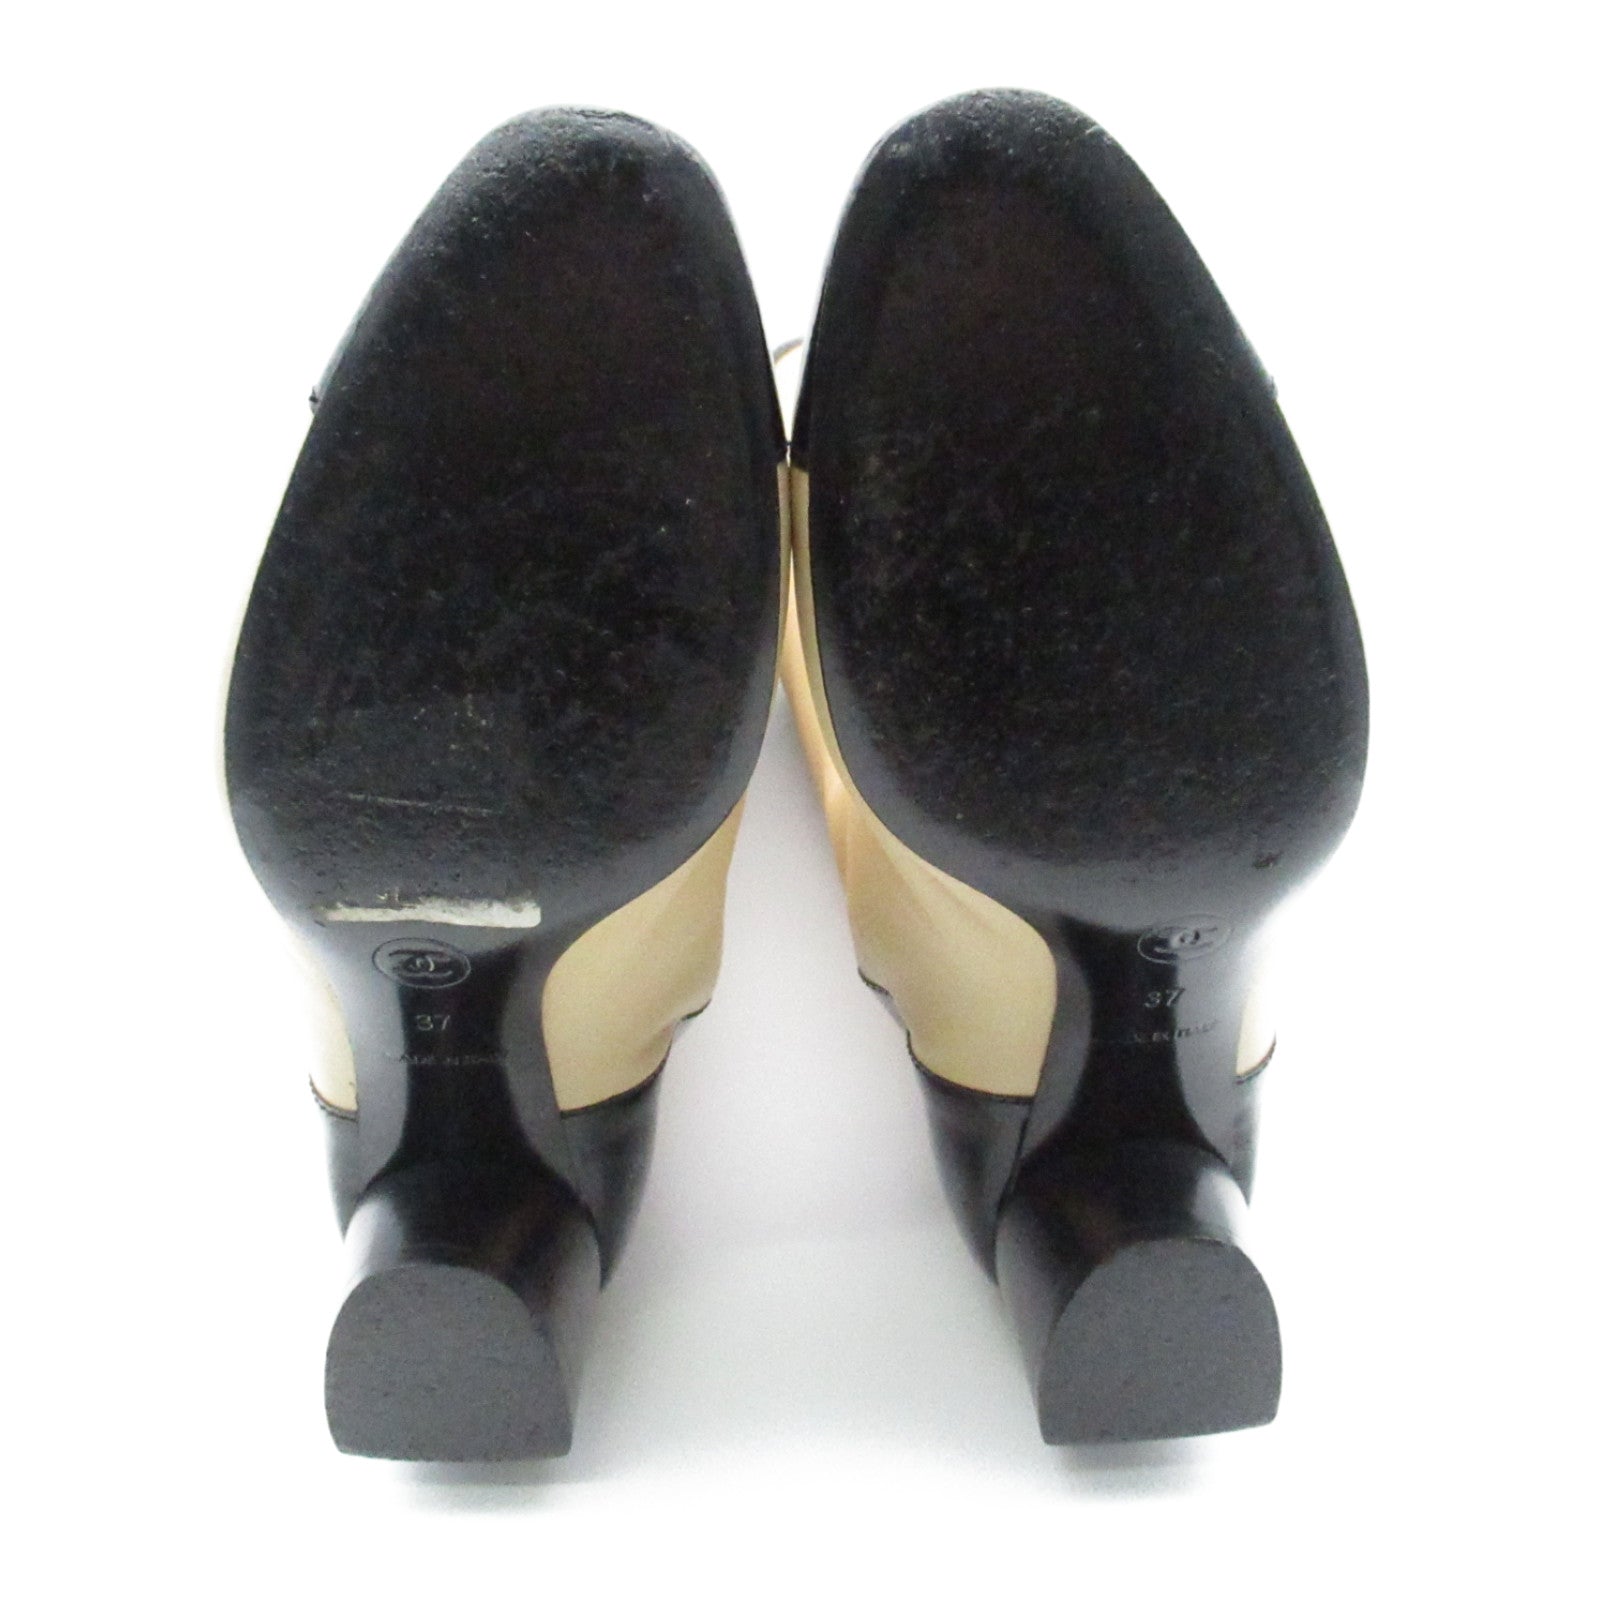 Chanel boots shoes shoes shoes, shoes, shoes, shoes, shoes, shoes, shoes, shoes, shoes, shoes, shoes, shoes, shoes, shoes, shoes